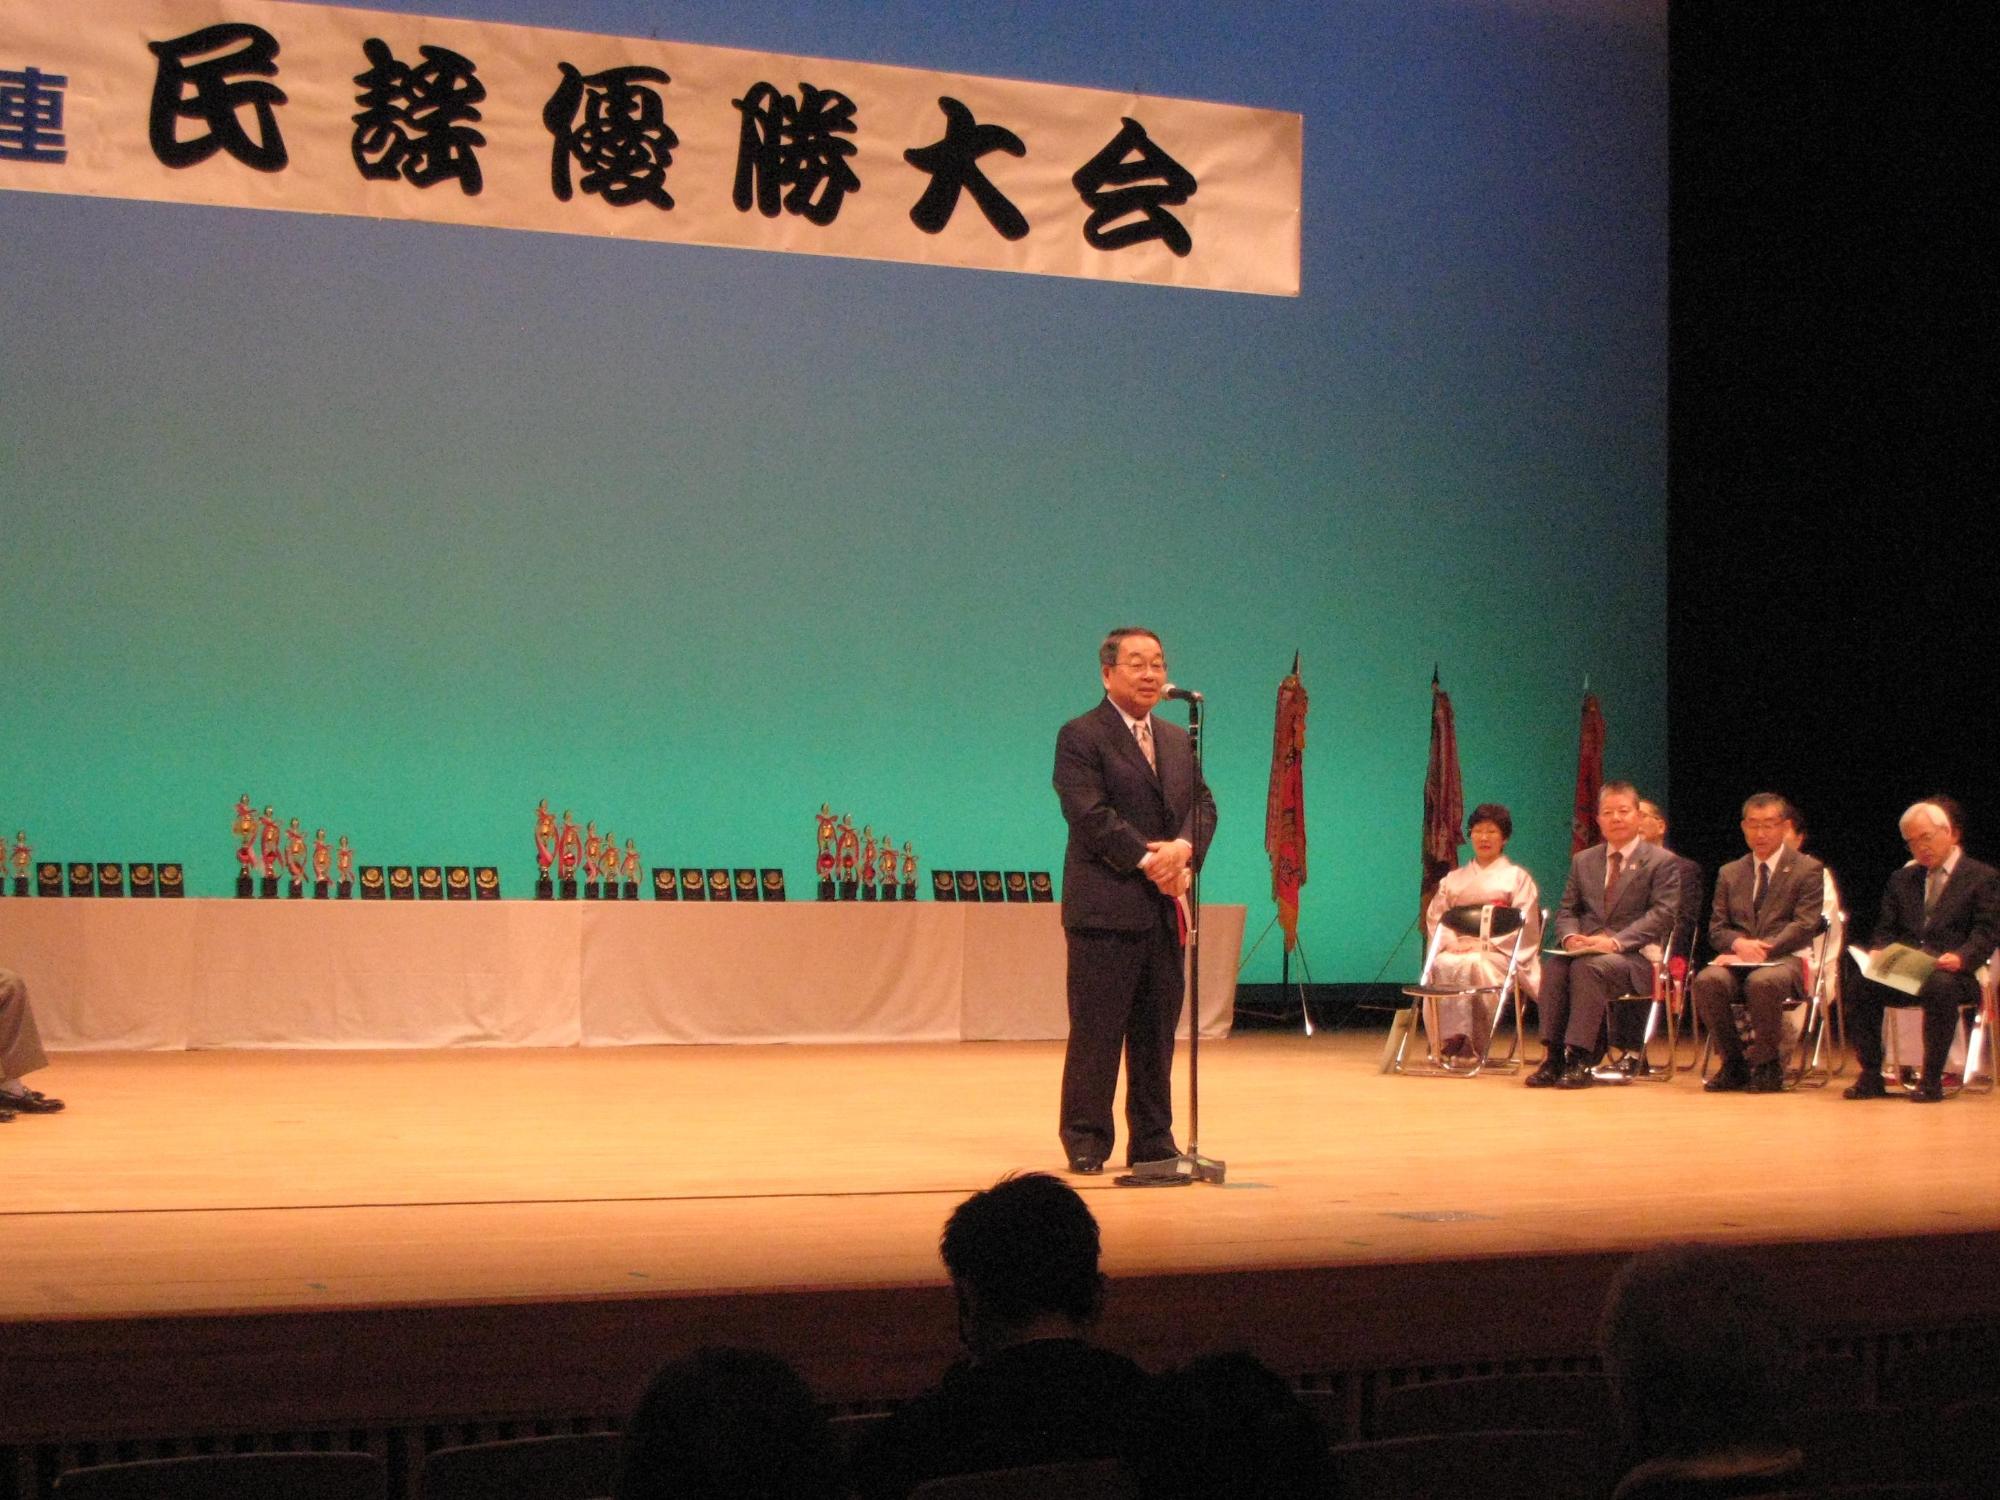 「第50回道央地区連民謡優勝大会」にて挨拶をしている原田市長の写真